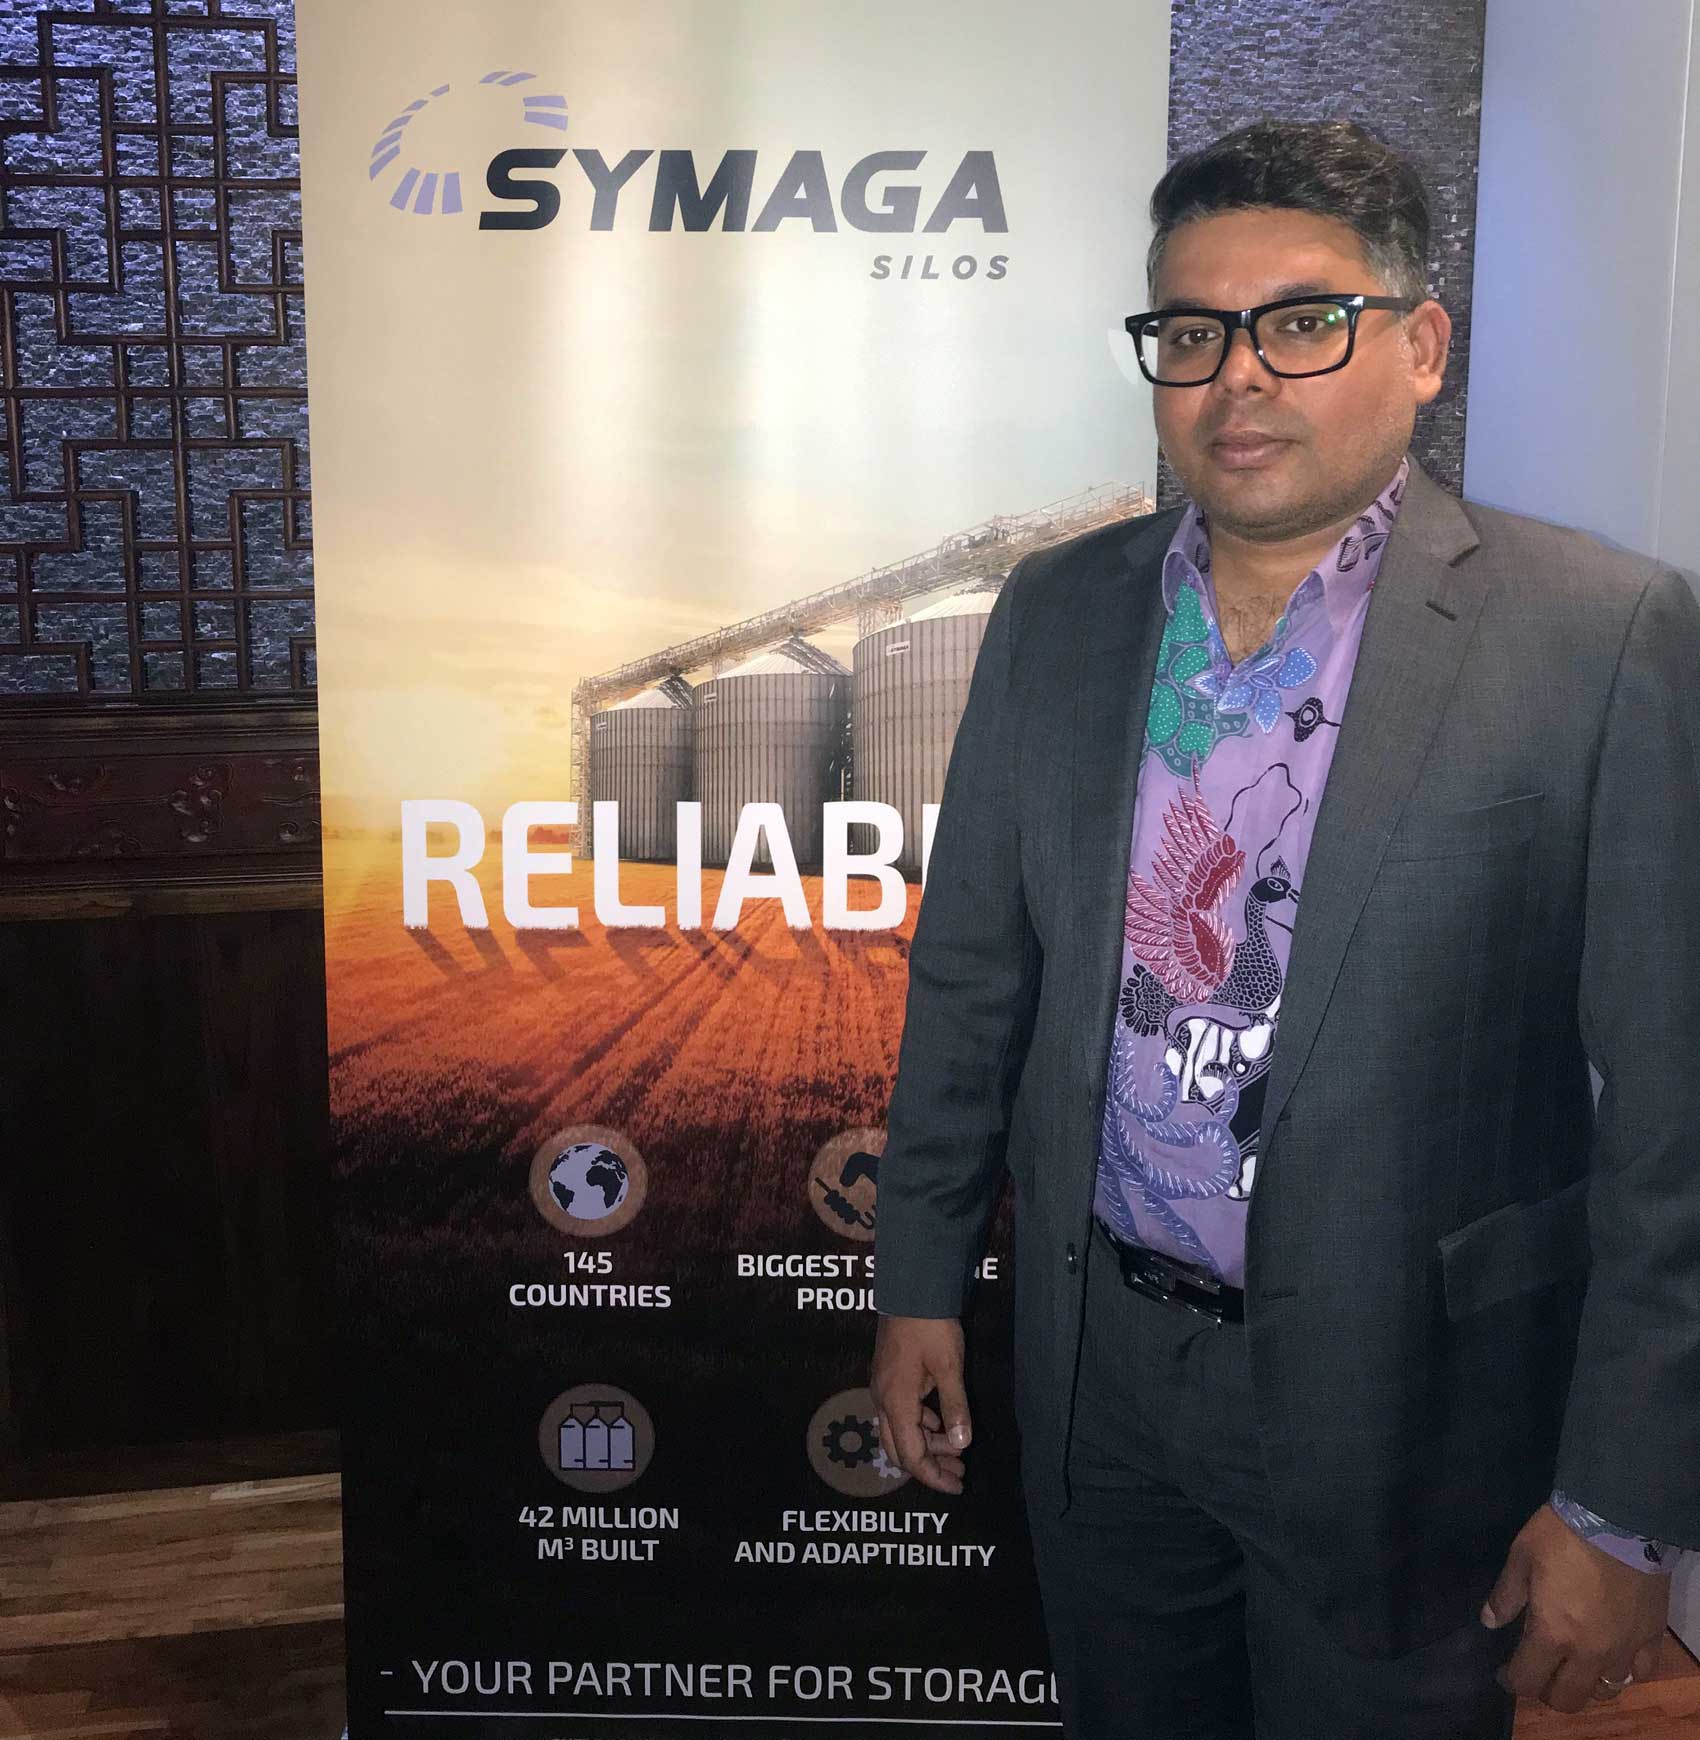 Archit Newaskar, representante de la empresa belga SCE Asia, compaa con la que Symaga acaba de cerrar un acuerdo de colaboracin...